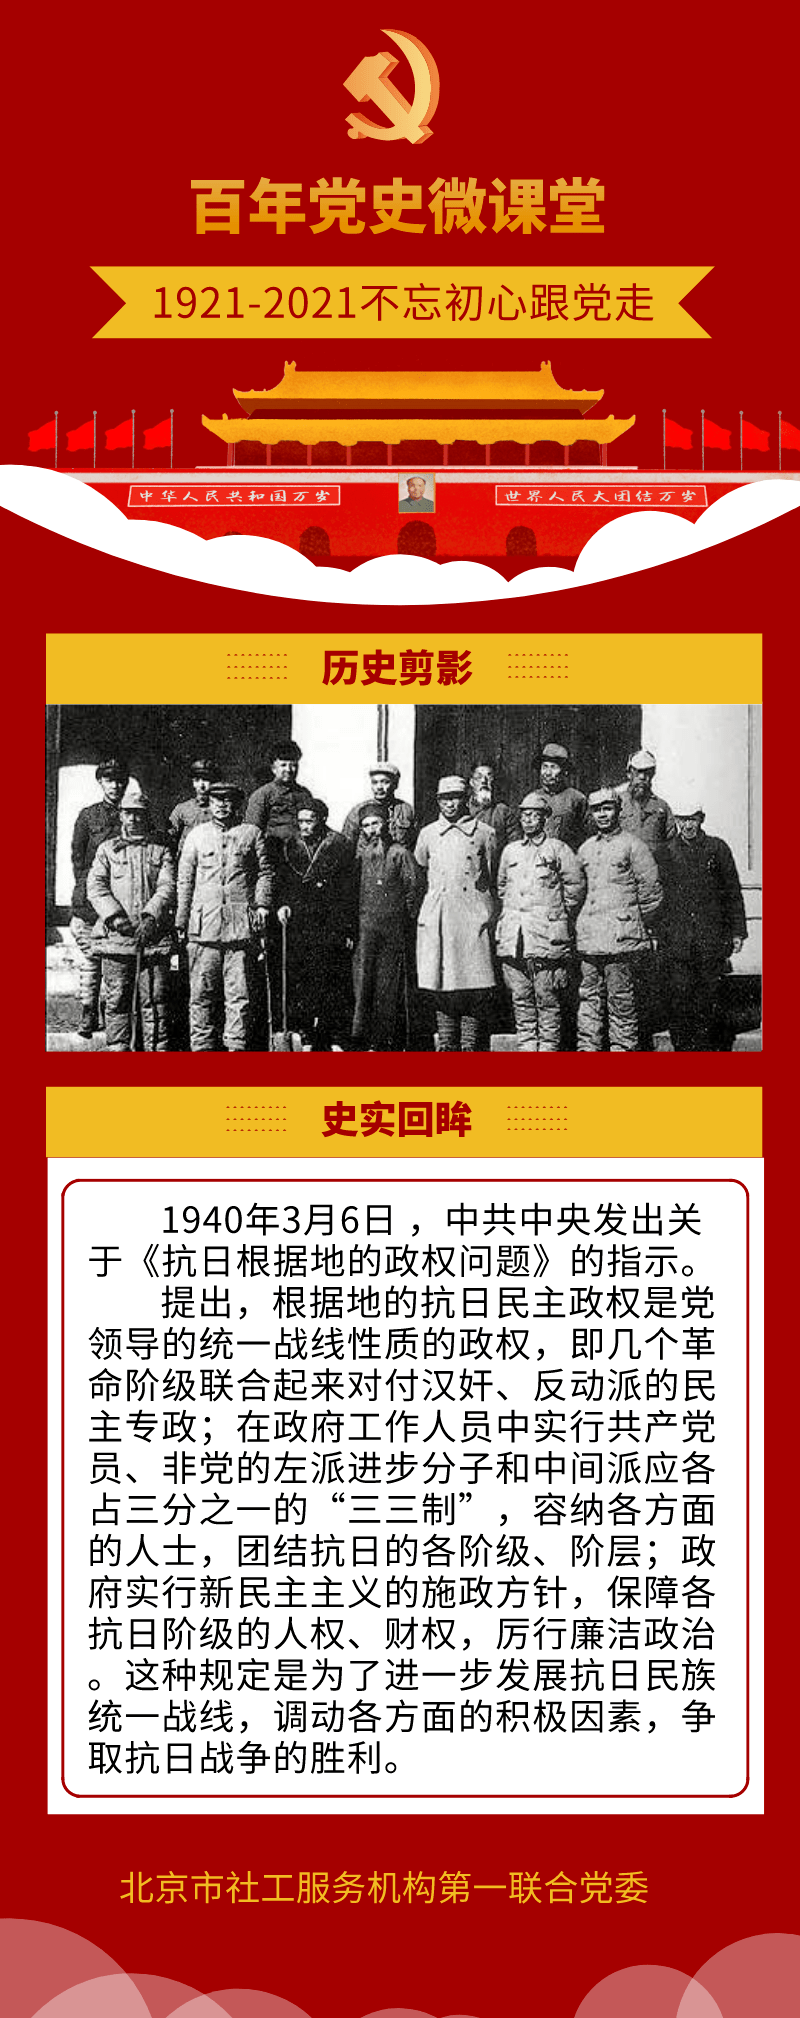 【学党史 悟初心】3月6日:三三制进一步发展抗日民族统一战线